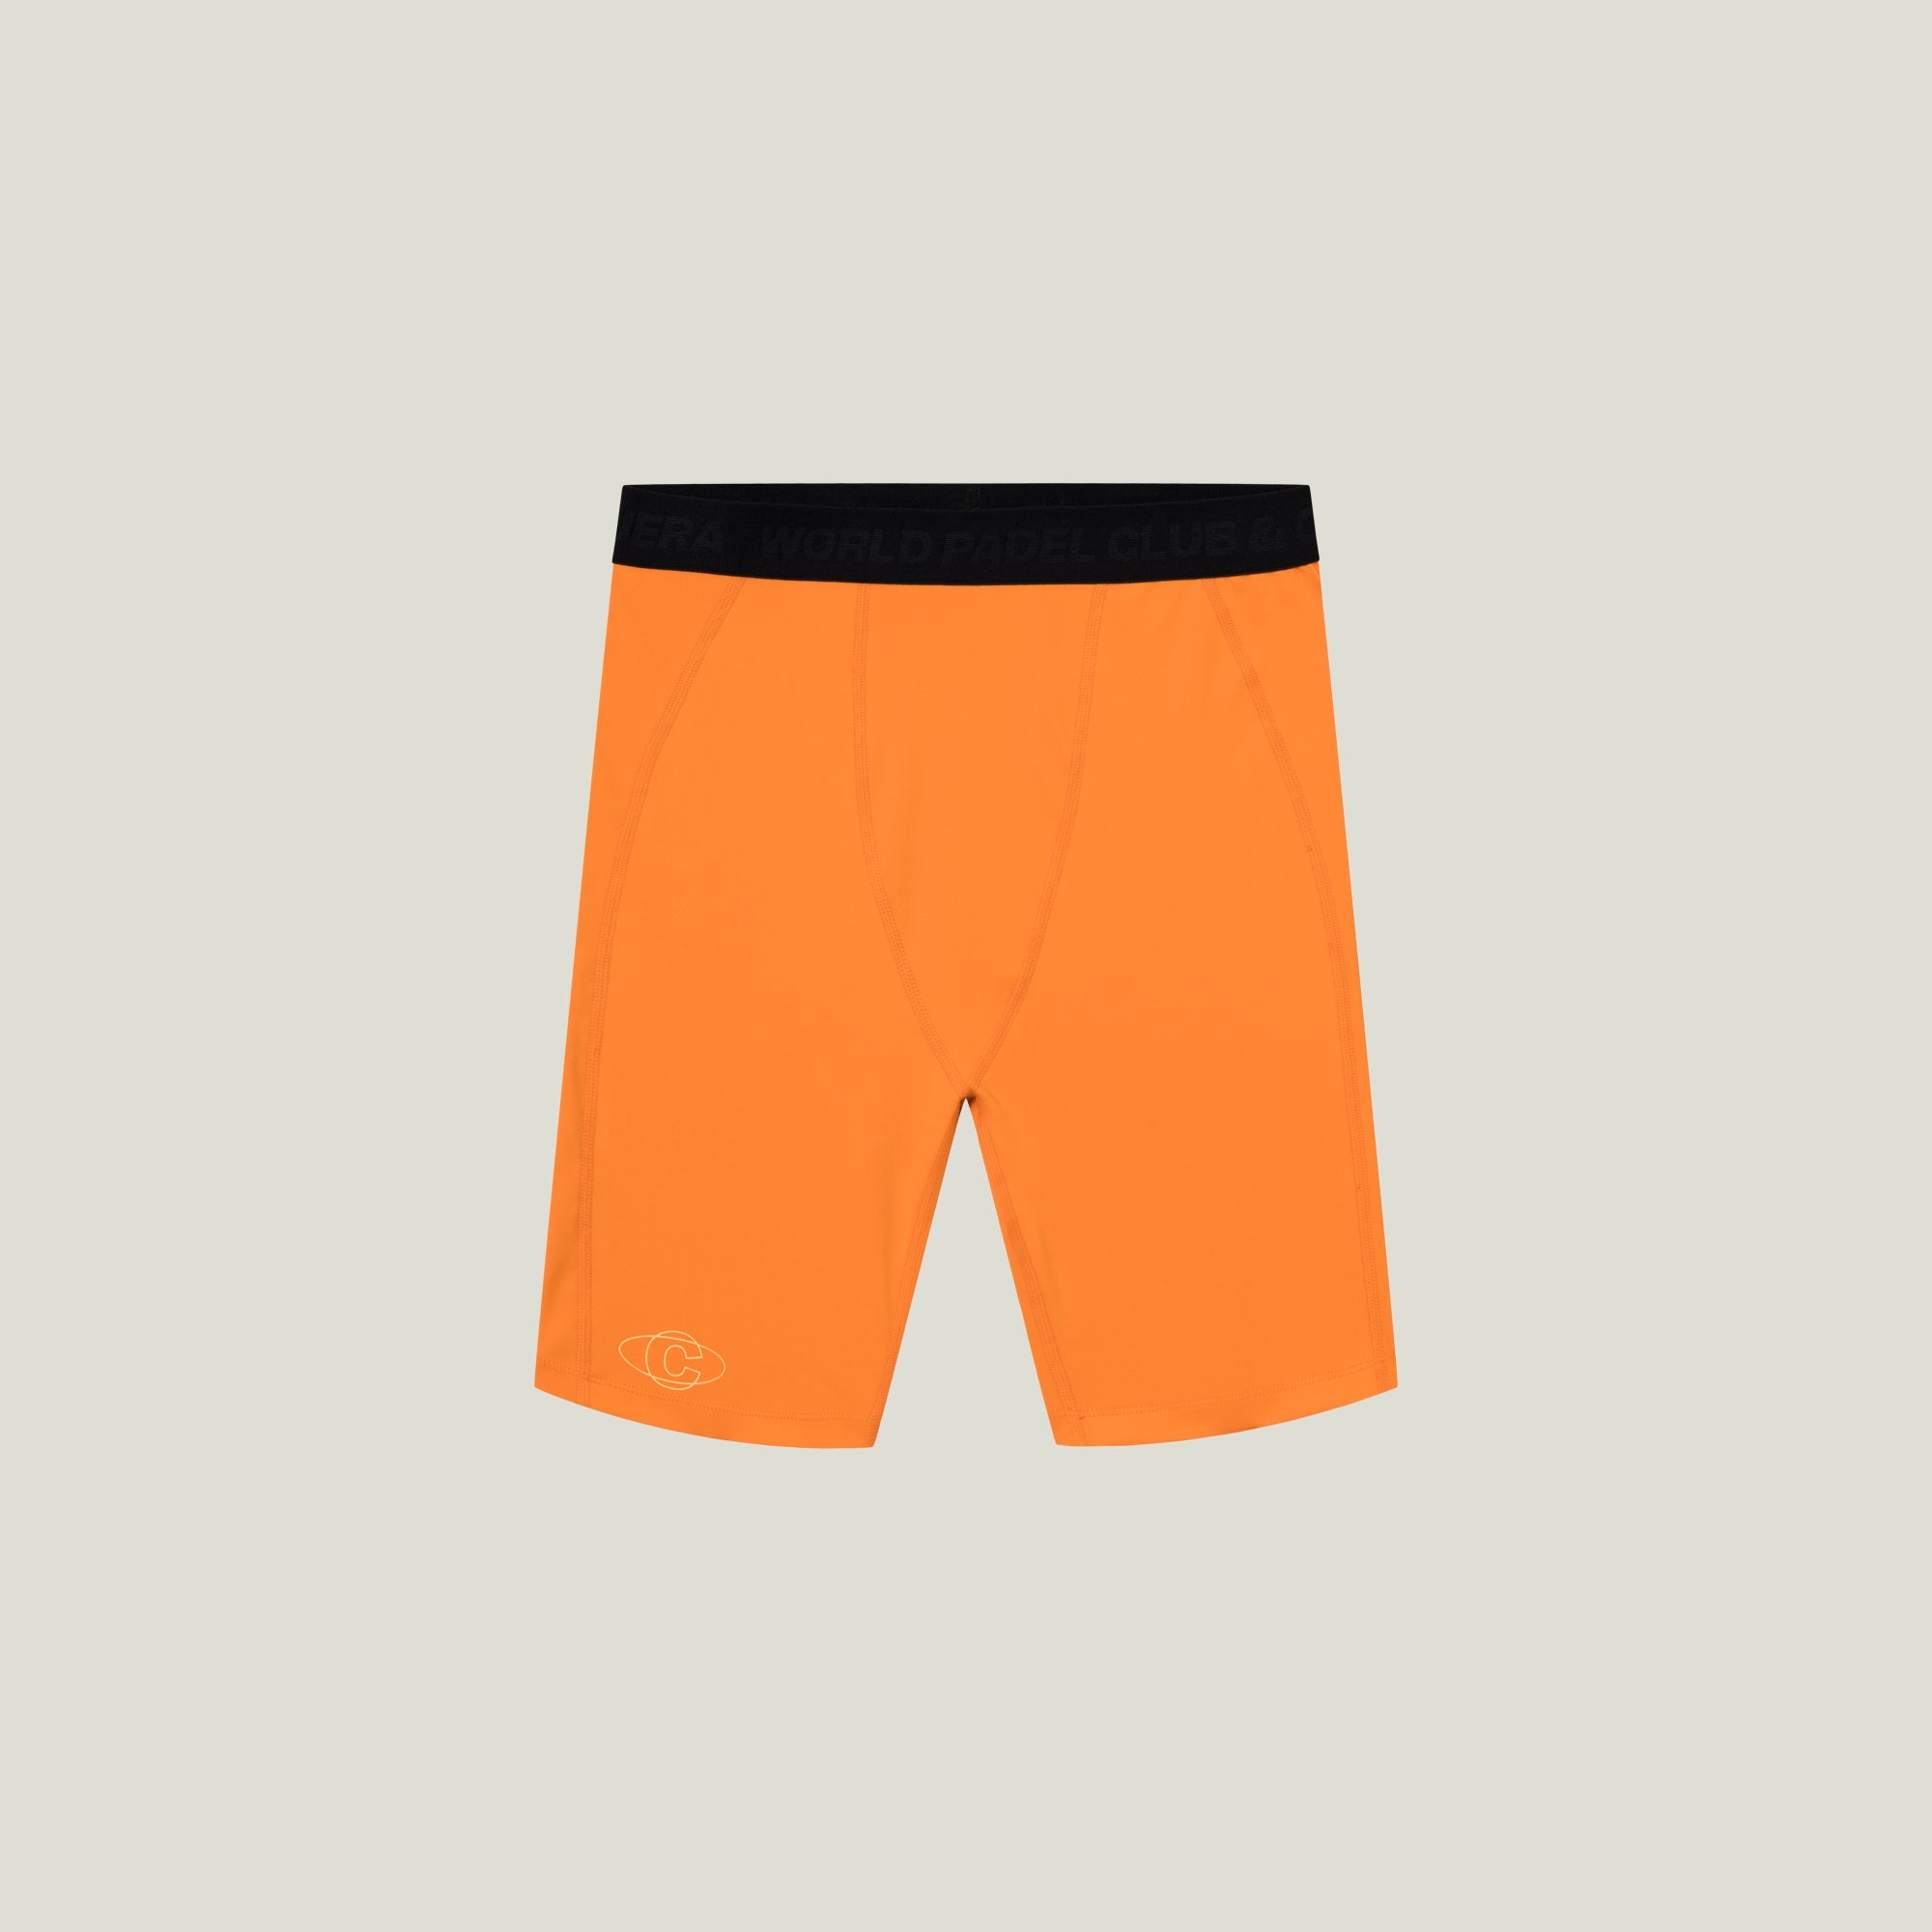 Cuera Oncourt Layer Tights (Orange) - XL